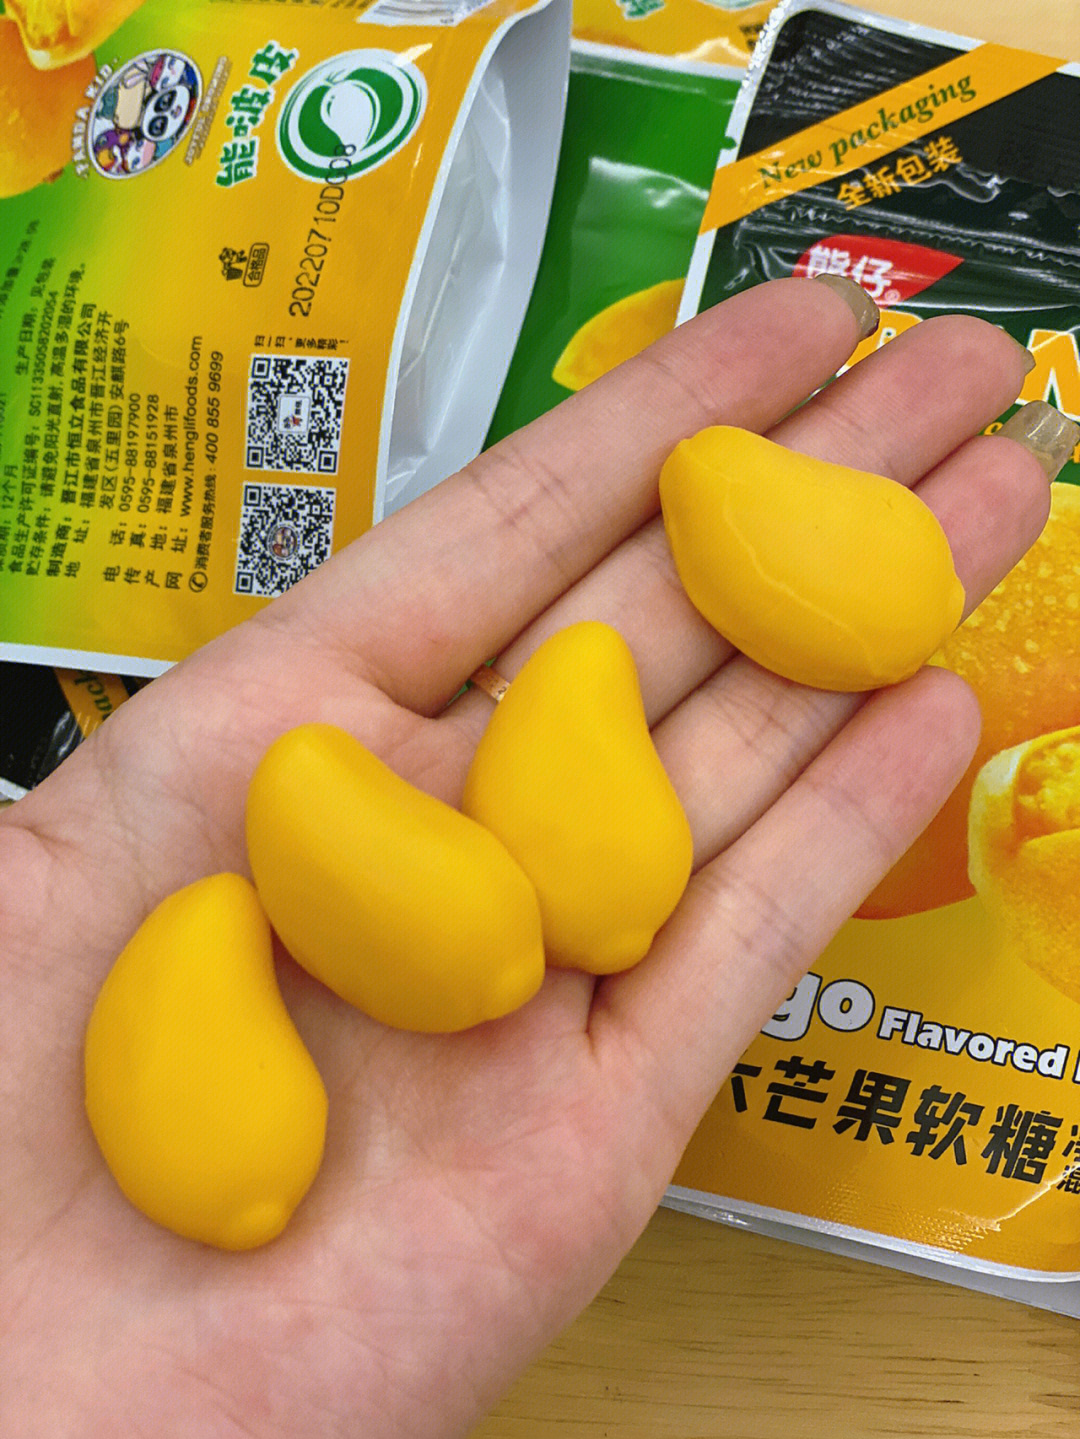 芒果软糖的做法图片